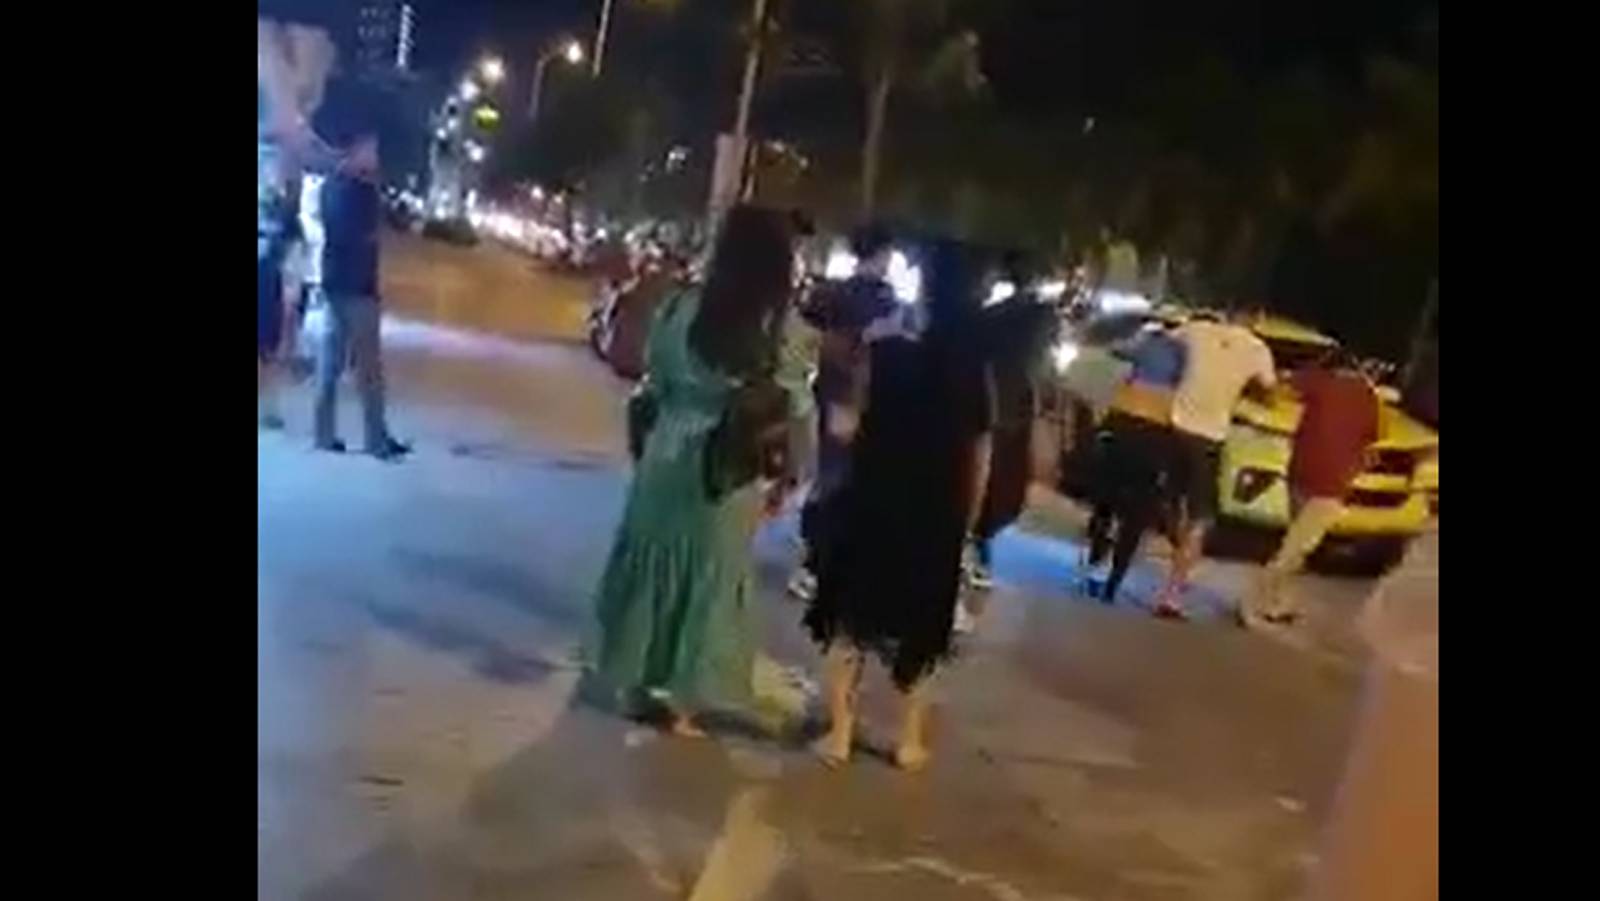 Xôn xao clip hướng dẫn viên ở Đà Nẵng bị nhóm người kẹp cổ, lôi đi trước mặt du khách: Sẽ xử lý nghiêm